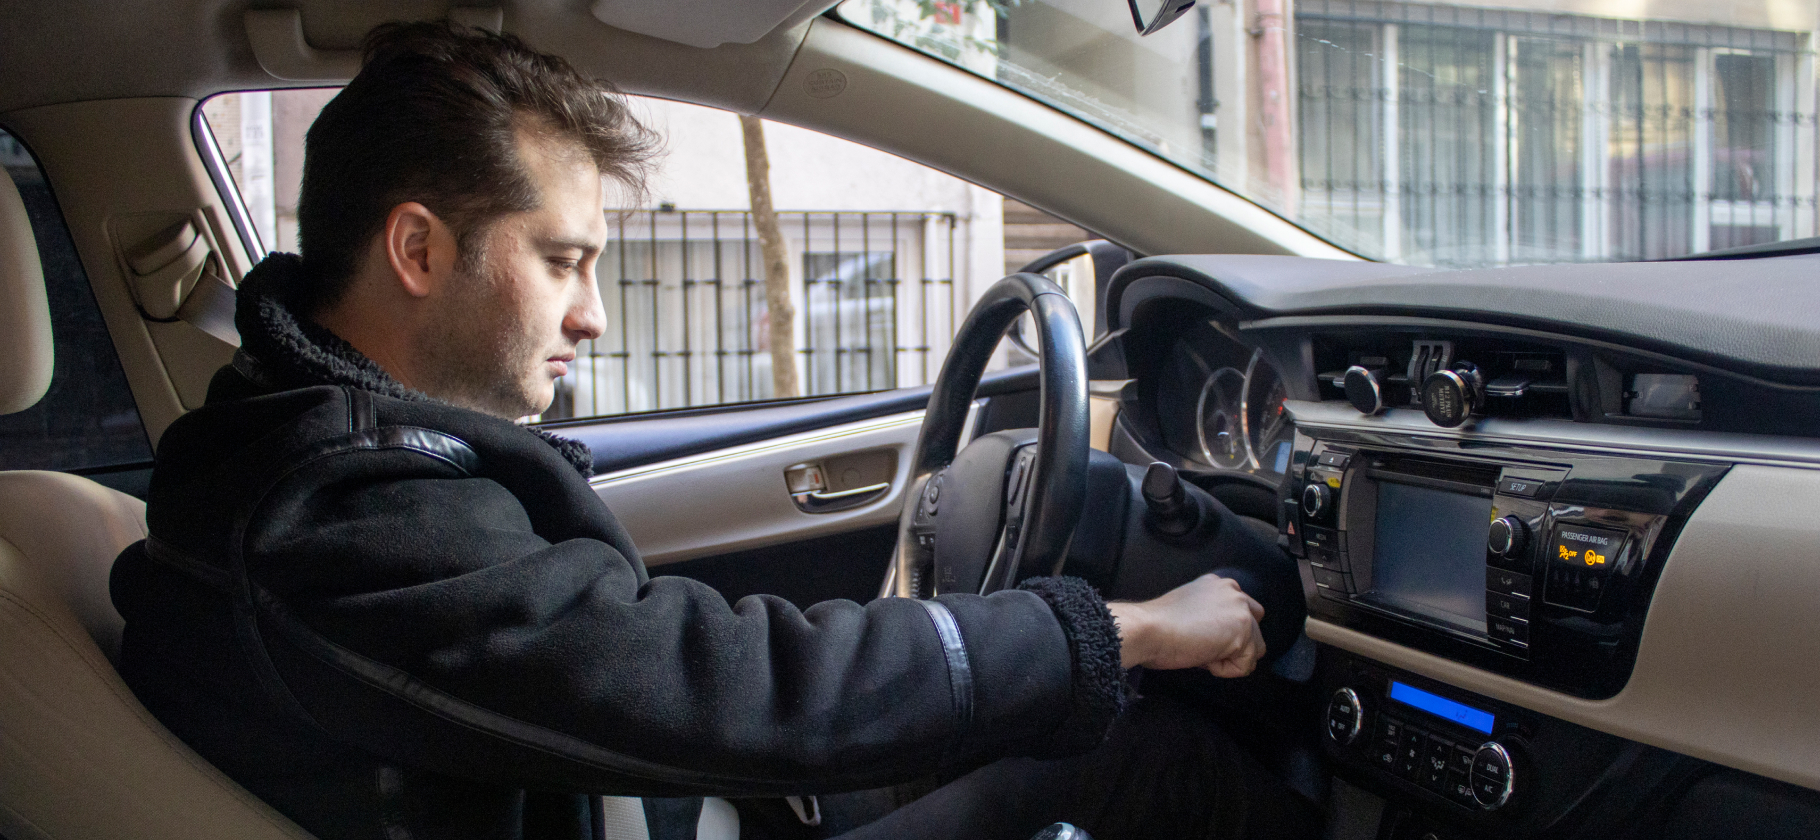 «Пришлось осваивать каршеринг»: 7 вариантов, как приспособиться к растущим ценам на такси